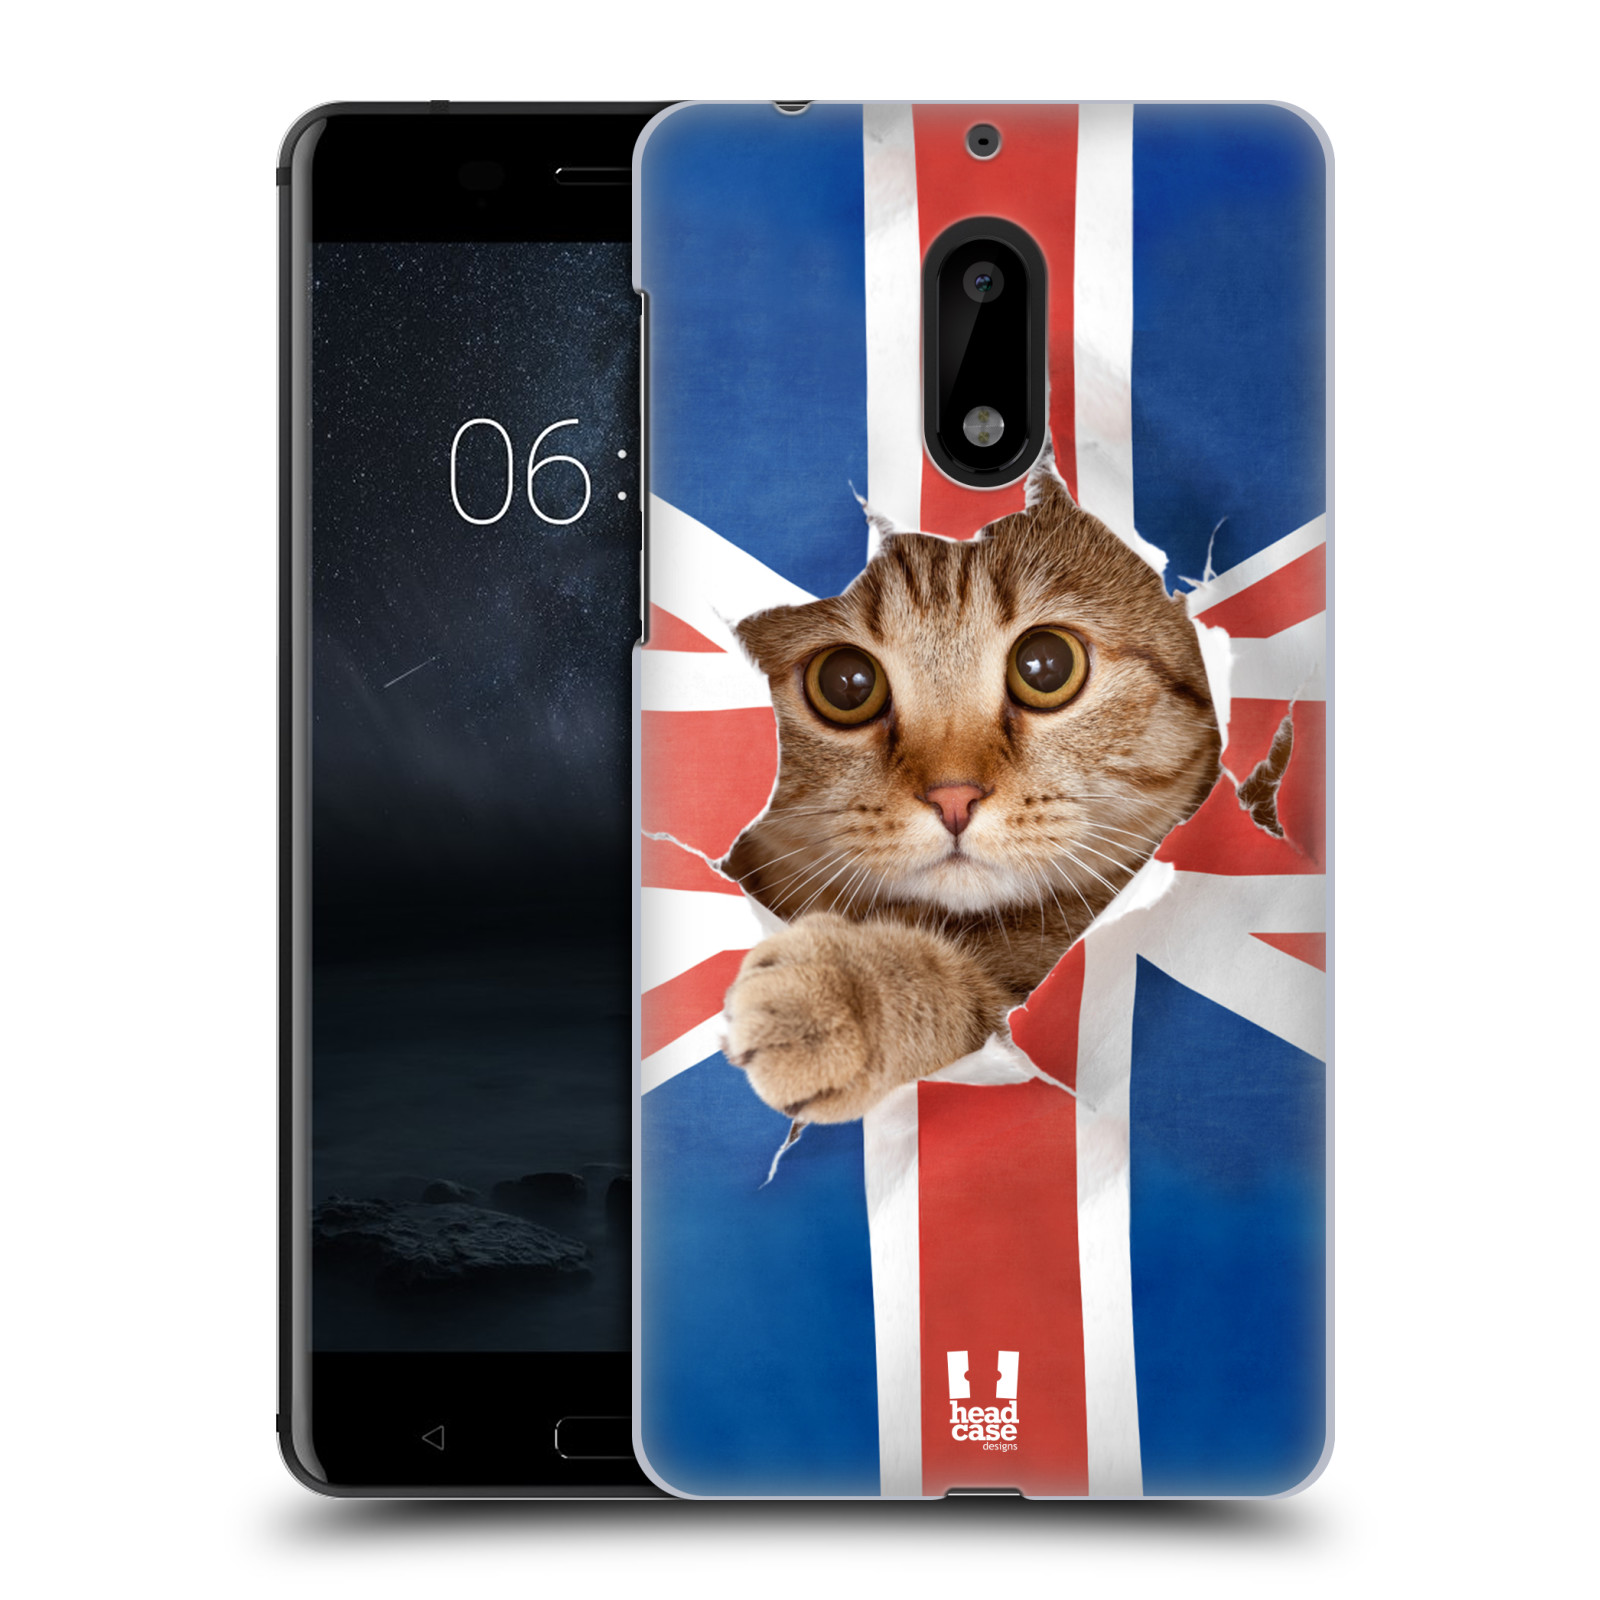 HEAD CASE plastový obal na mobil Nokia 6 vzor Legrační zvířátka kočička a Velká Británie vlajka